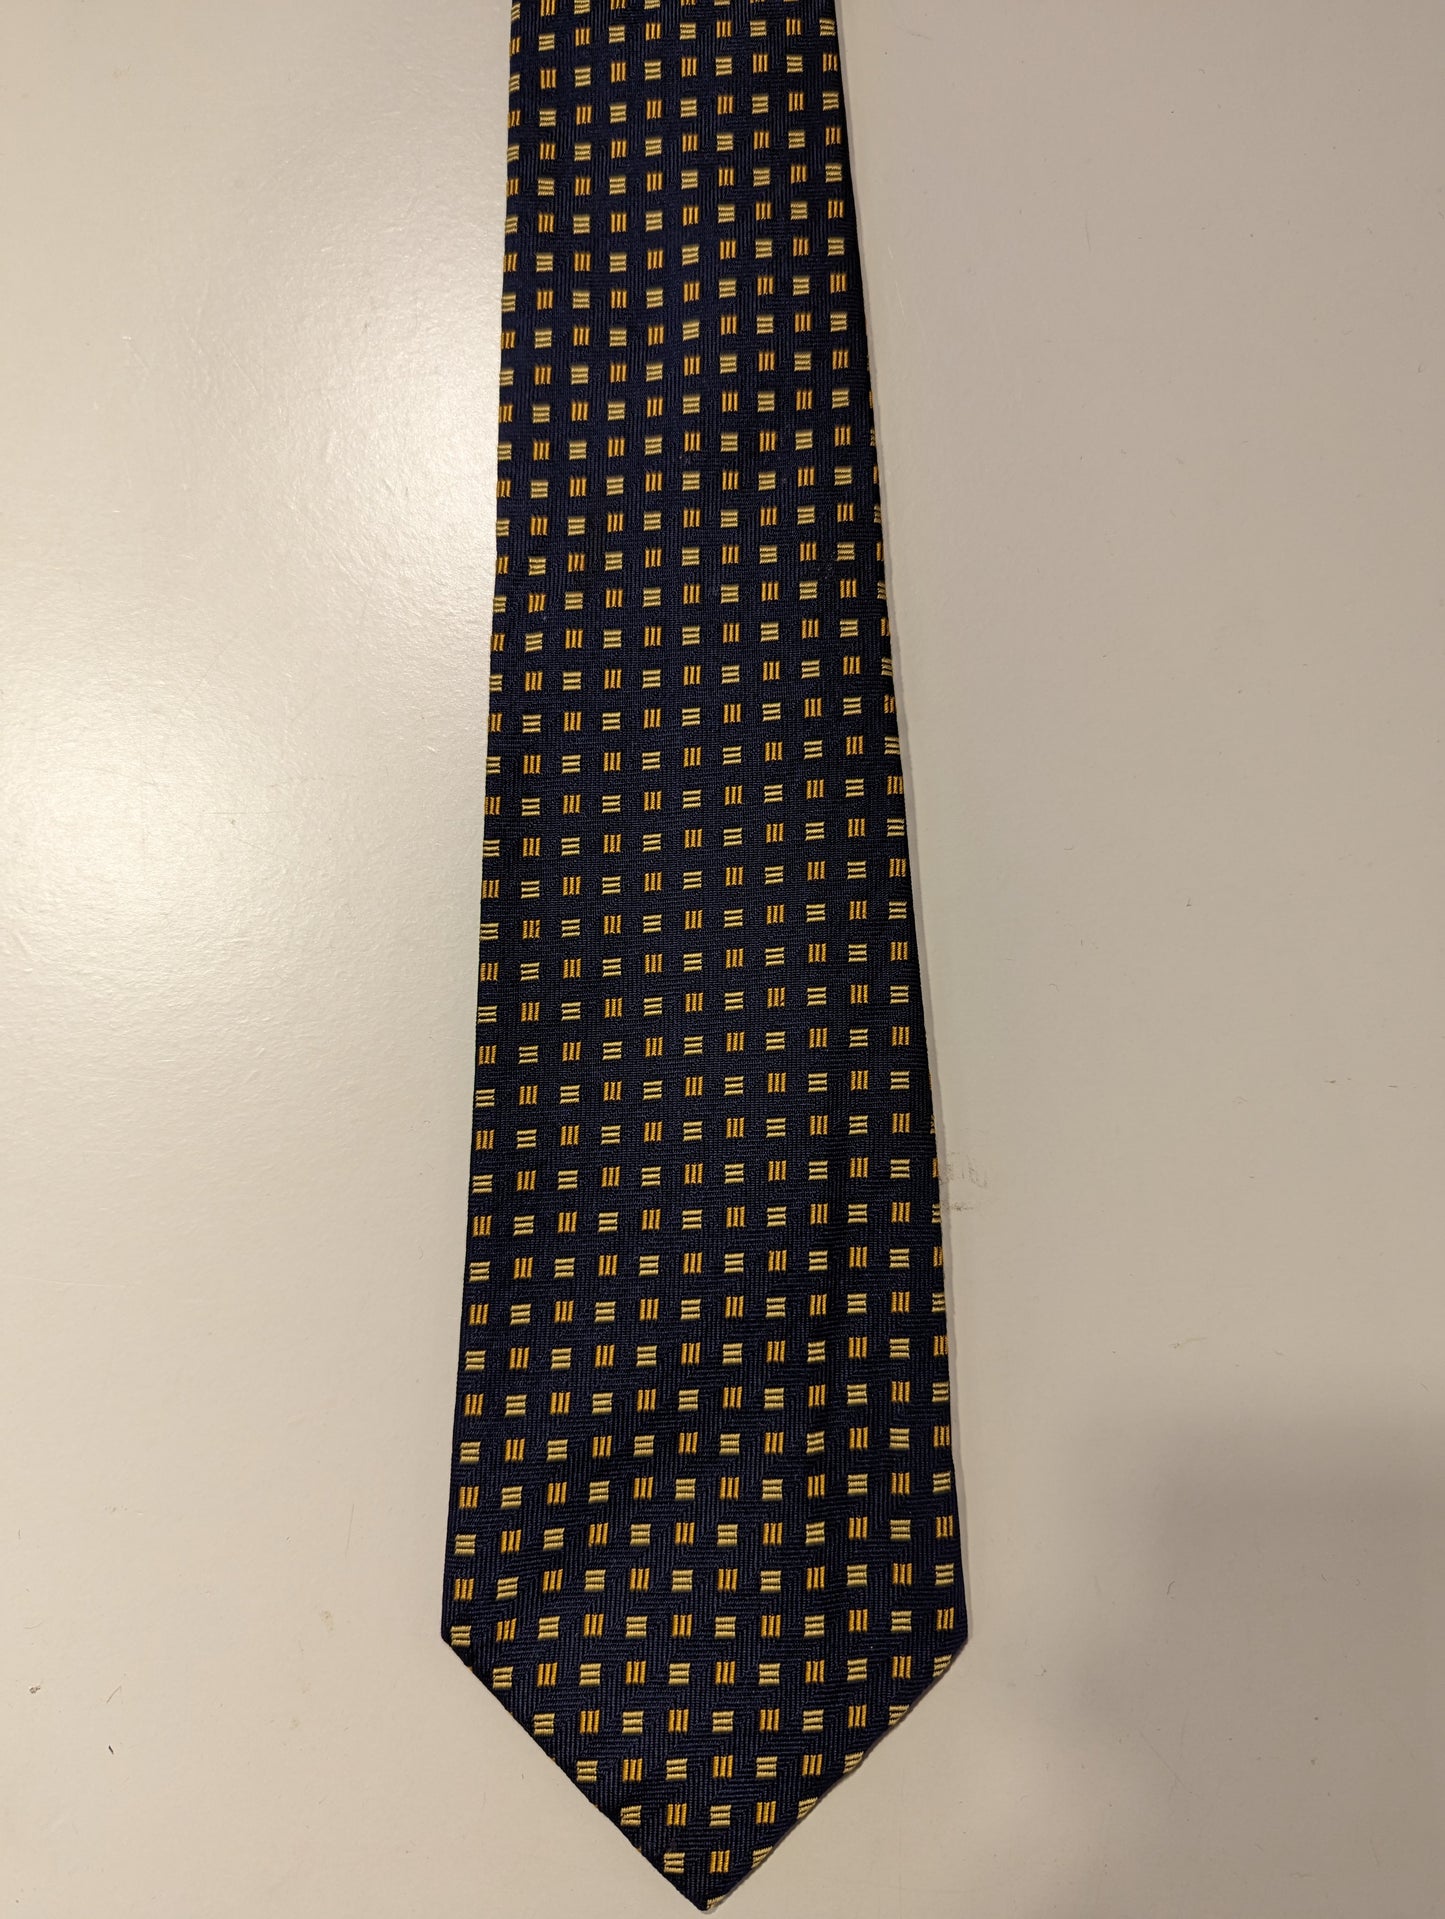 La cravatta di seta inglese con cappuccio. Motivo giallo blu.